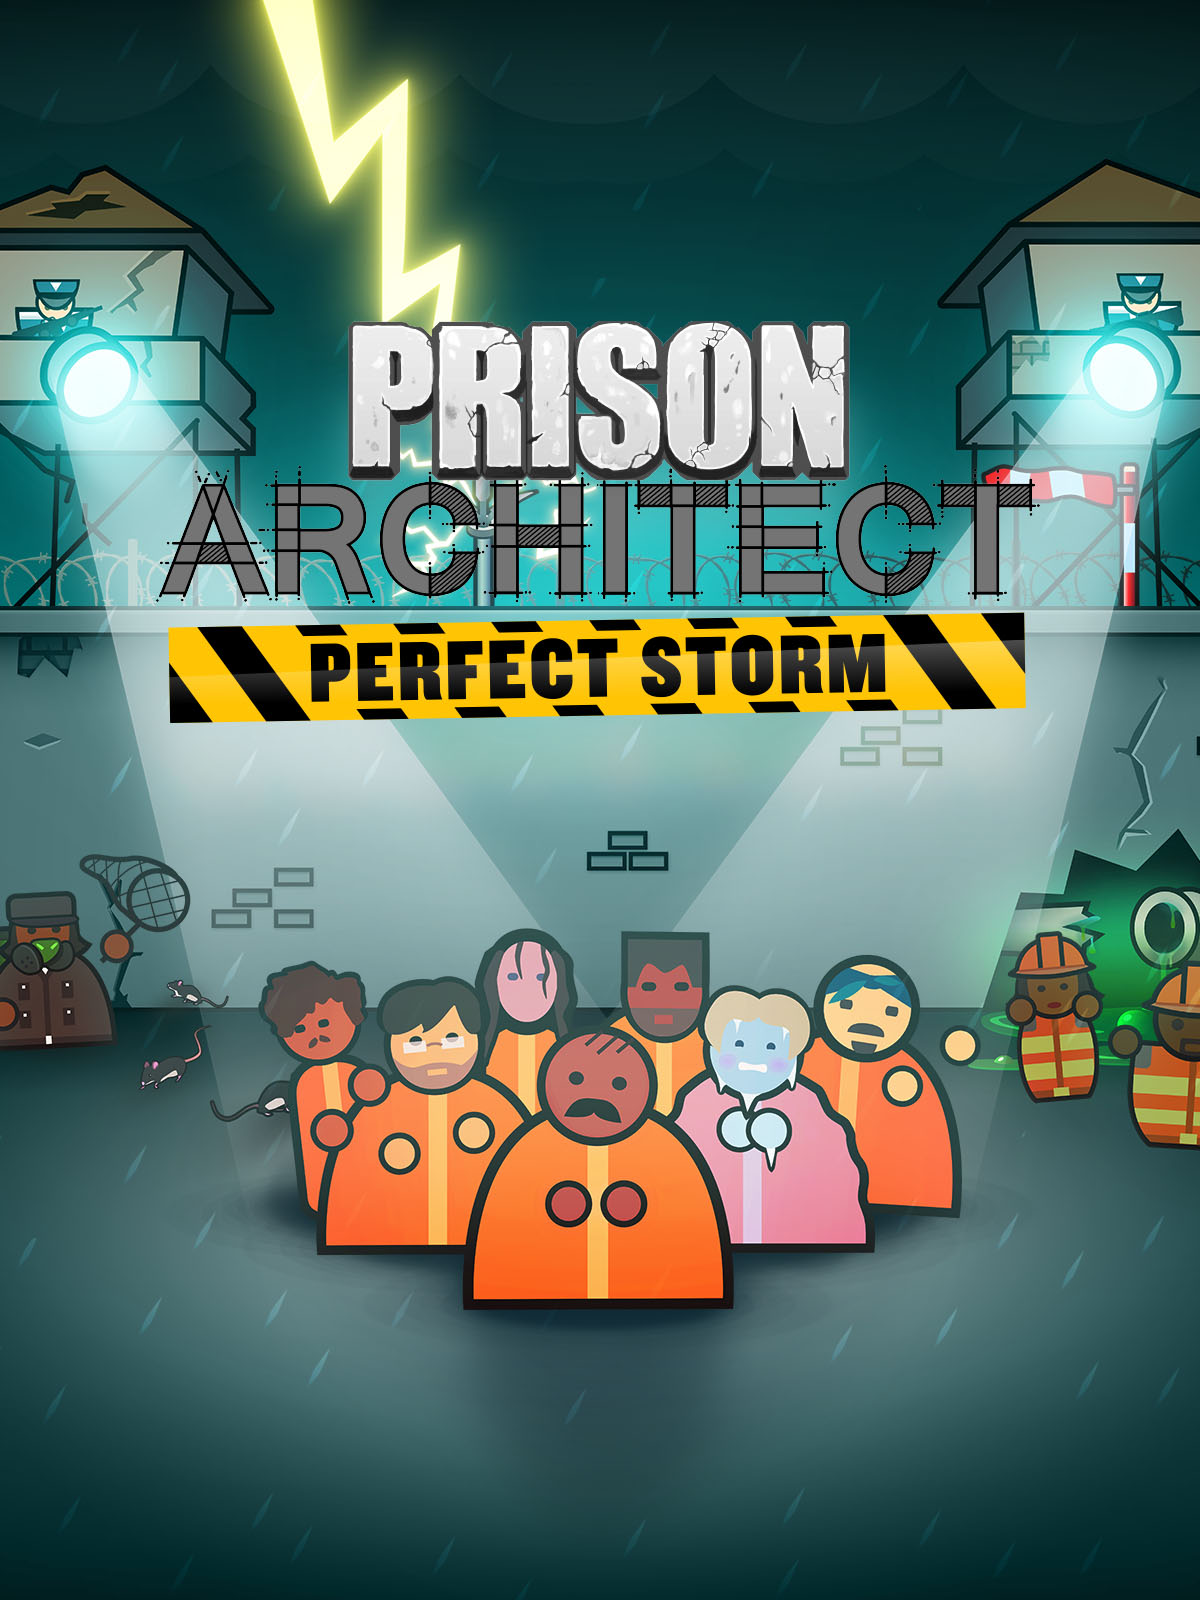 Prison Architect: Perfect Storm DLC